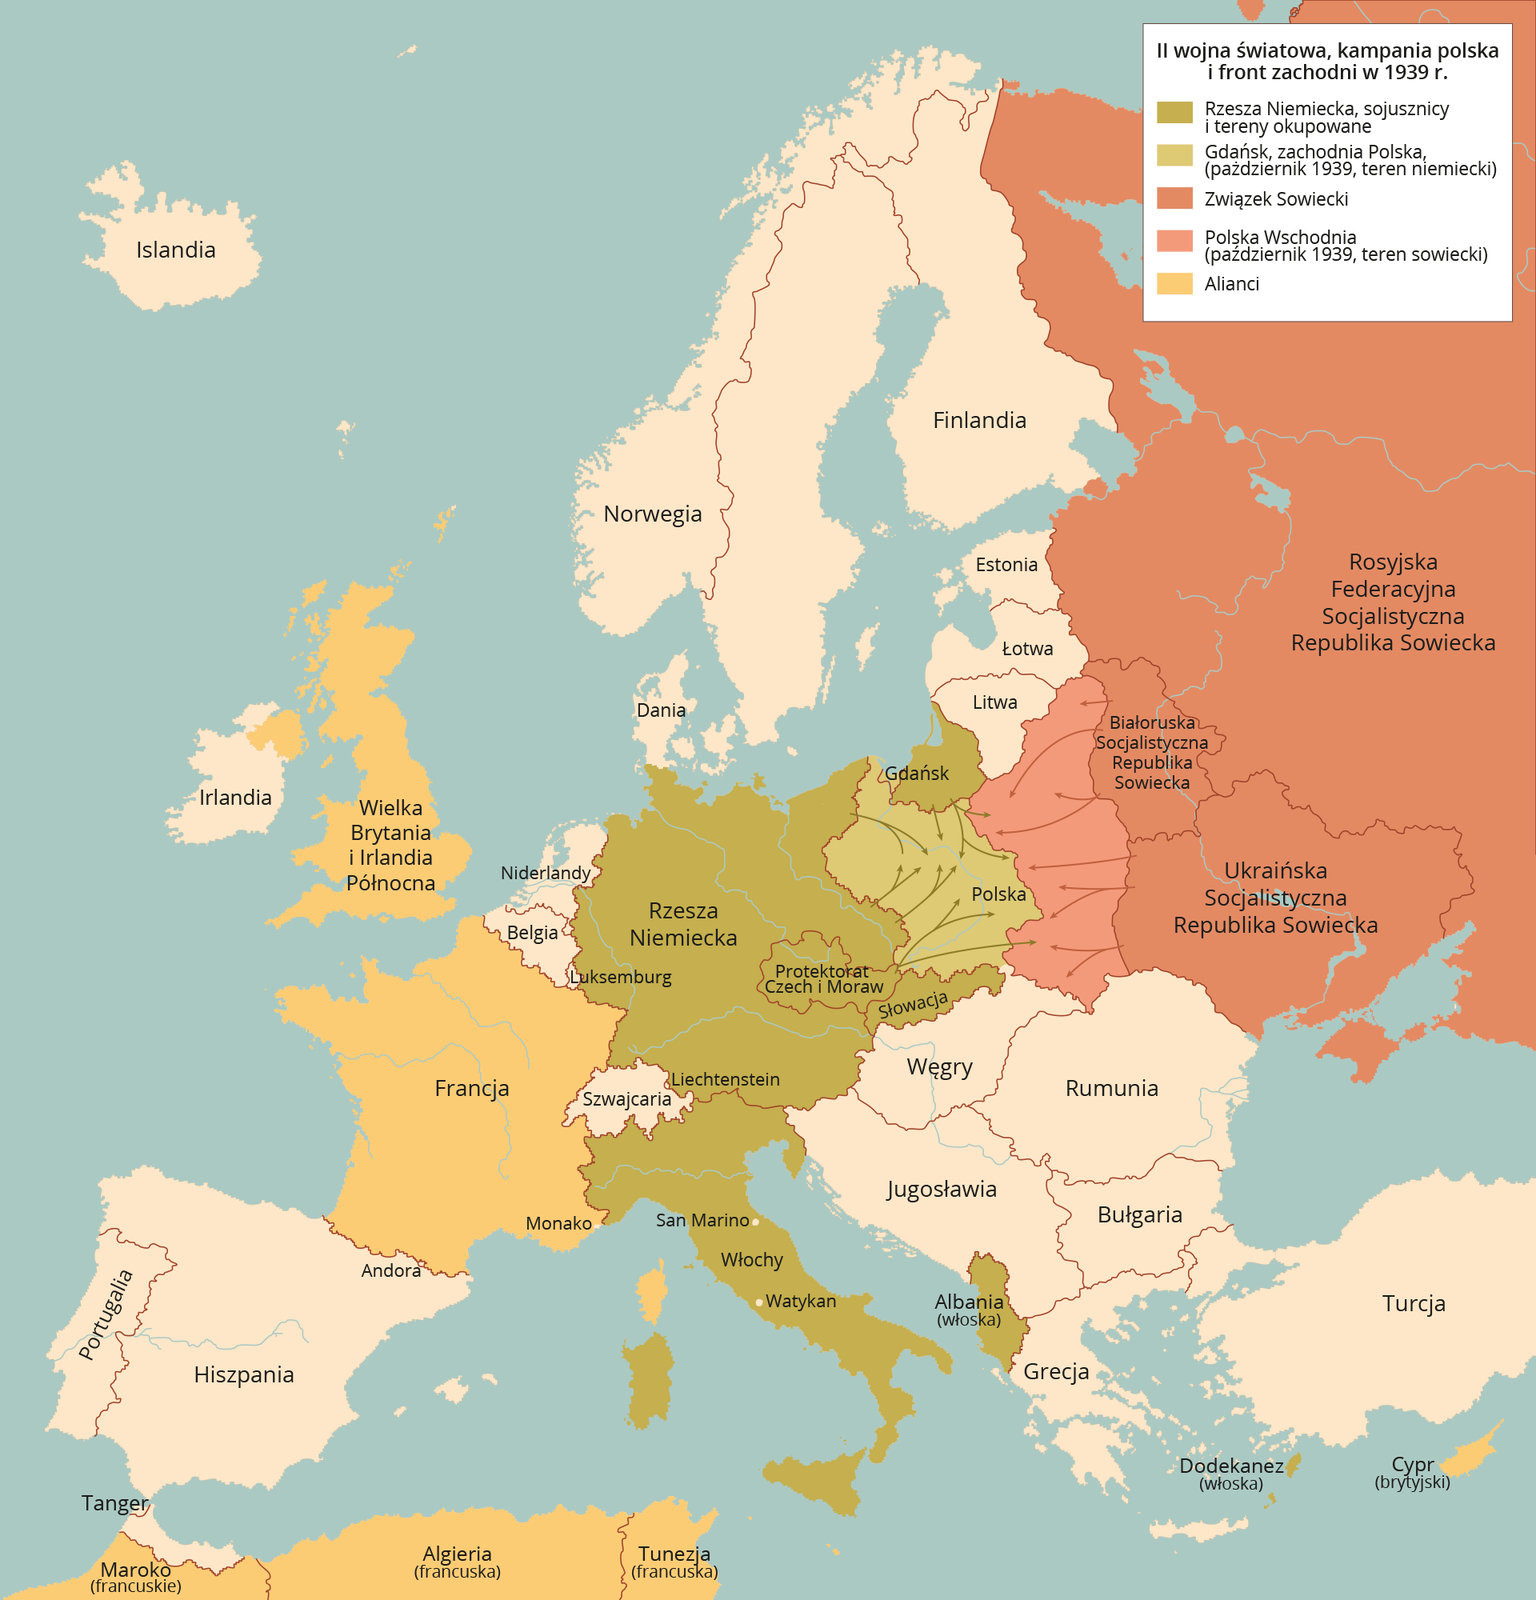 Mapa przedstawia drugą wojnę światową, kampanię polską i front zachodni w 1939 roku. Sojusznicy i tereny okupowane Rzeszy Niemieckiej to Gdańsk, Protektorat Czech i Moraw, Słowacja, Włochy, Albania. Zachodnia Polska od października 1939 roku była terenem niemieckim. Związek Sowiecki obejmował Rosyjską Federacyjną Socjalistyczną Republikę Sowiecką, Białoruską Socjalistyczną Republikę Radziecką i Ukraińską Socjalistyczną Republikę Sowiecką. Polska wschodnia od października 1939 roku była terenem sowieckim. Alianci to Wielka Brytania, Irlandia Północna, Francja, Monako, Cypr brytyjski, Maroko francuskie, Algieria francuska i Tunezja francuska.